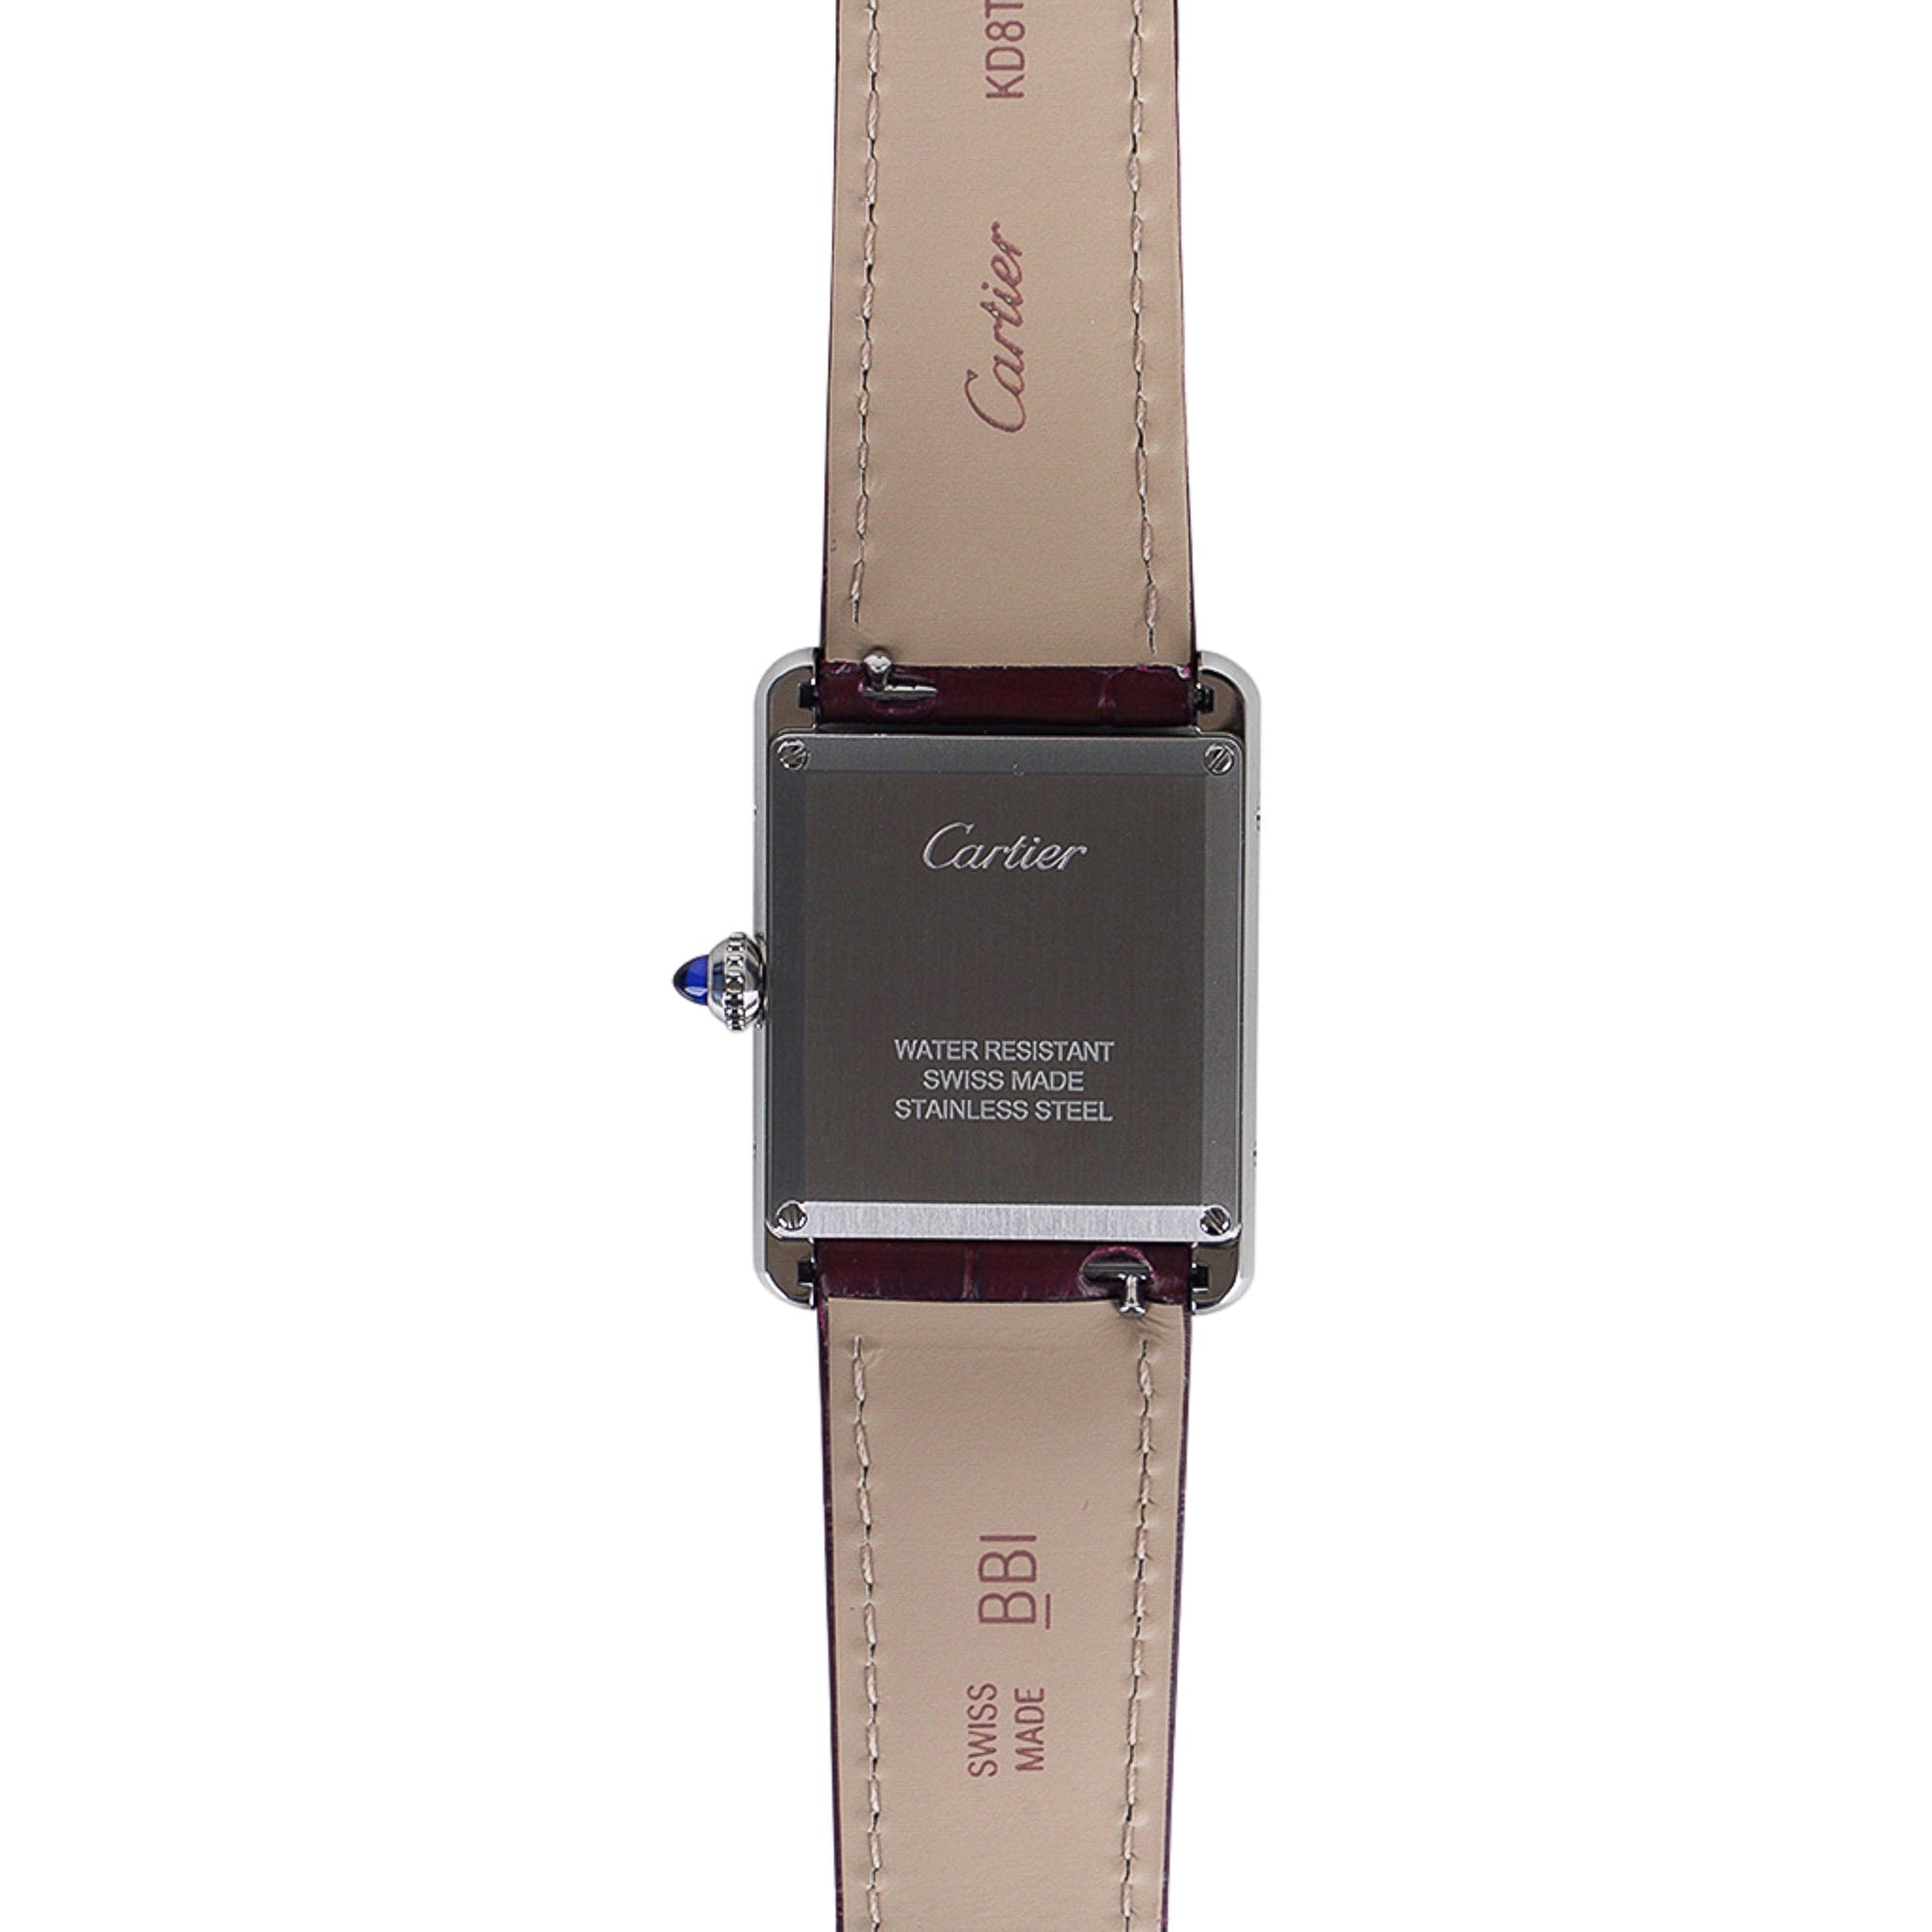 Cartier Tank Must de Cartier Watch Burgundy 2021 Limited Edition New w/ Box